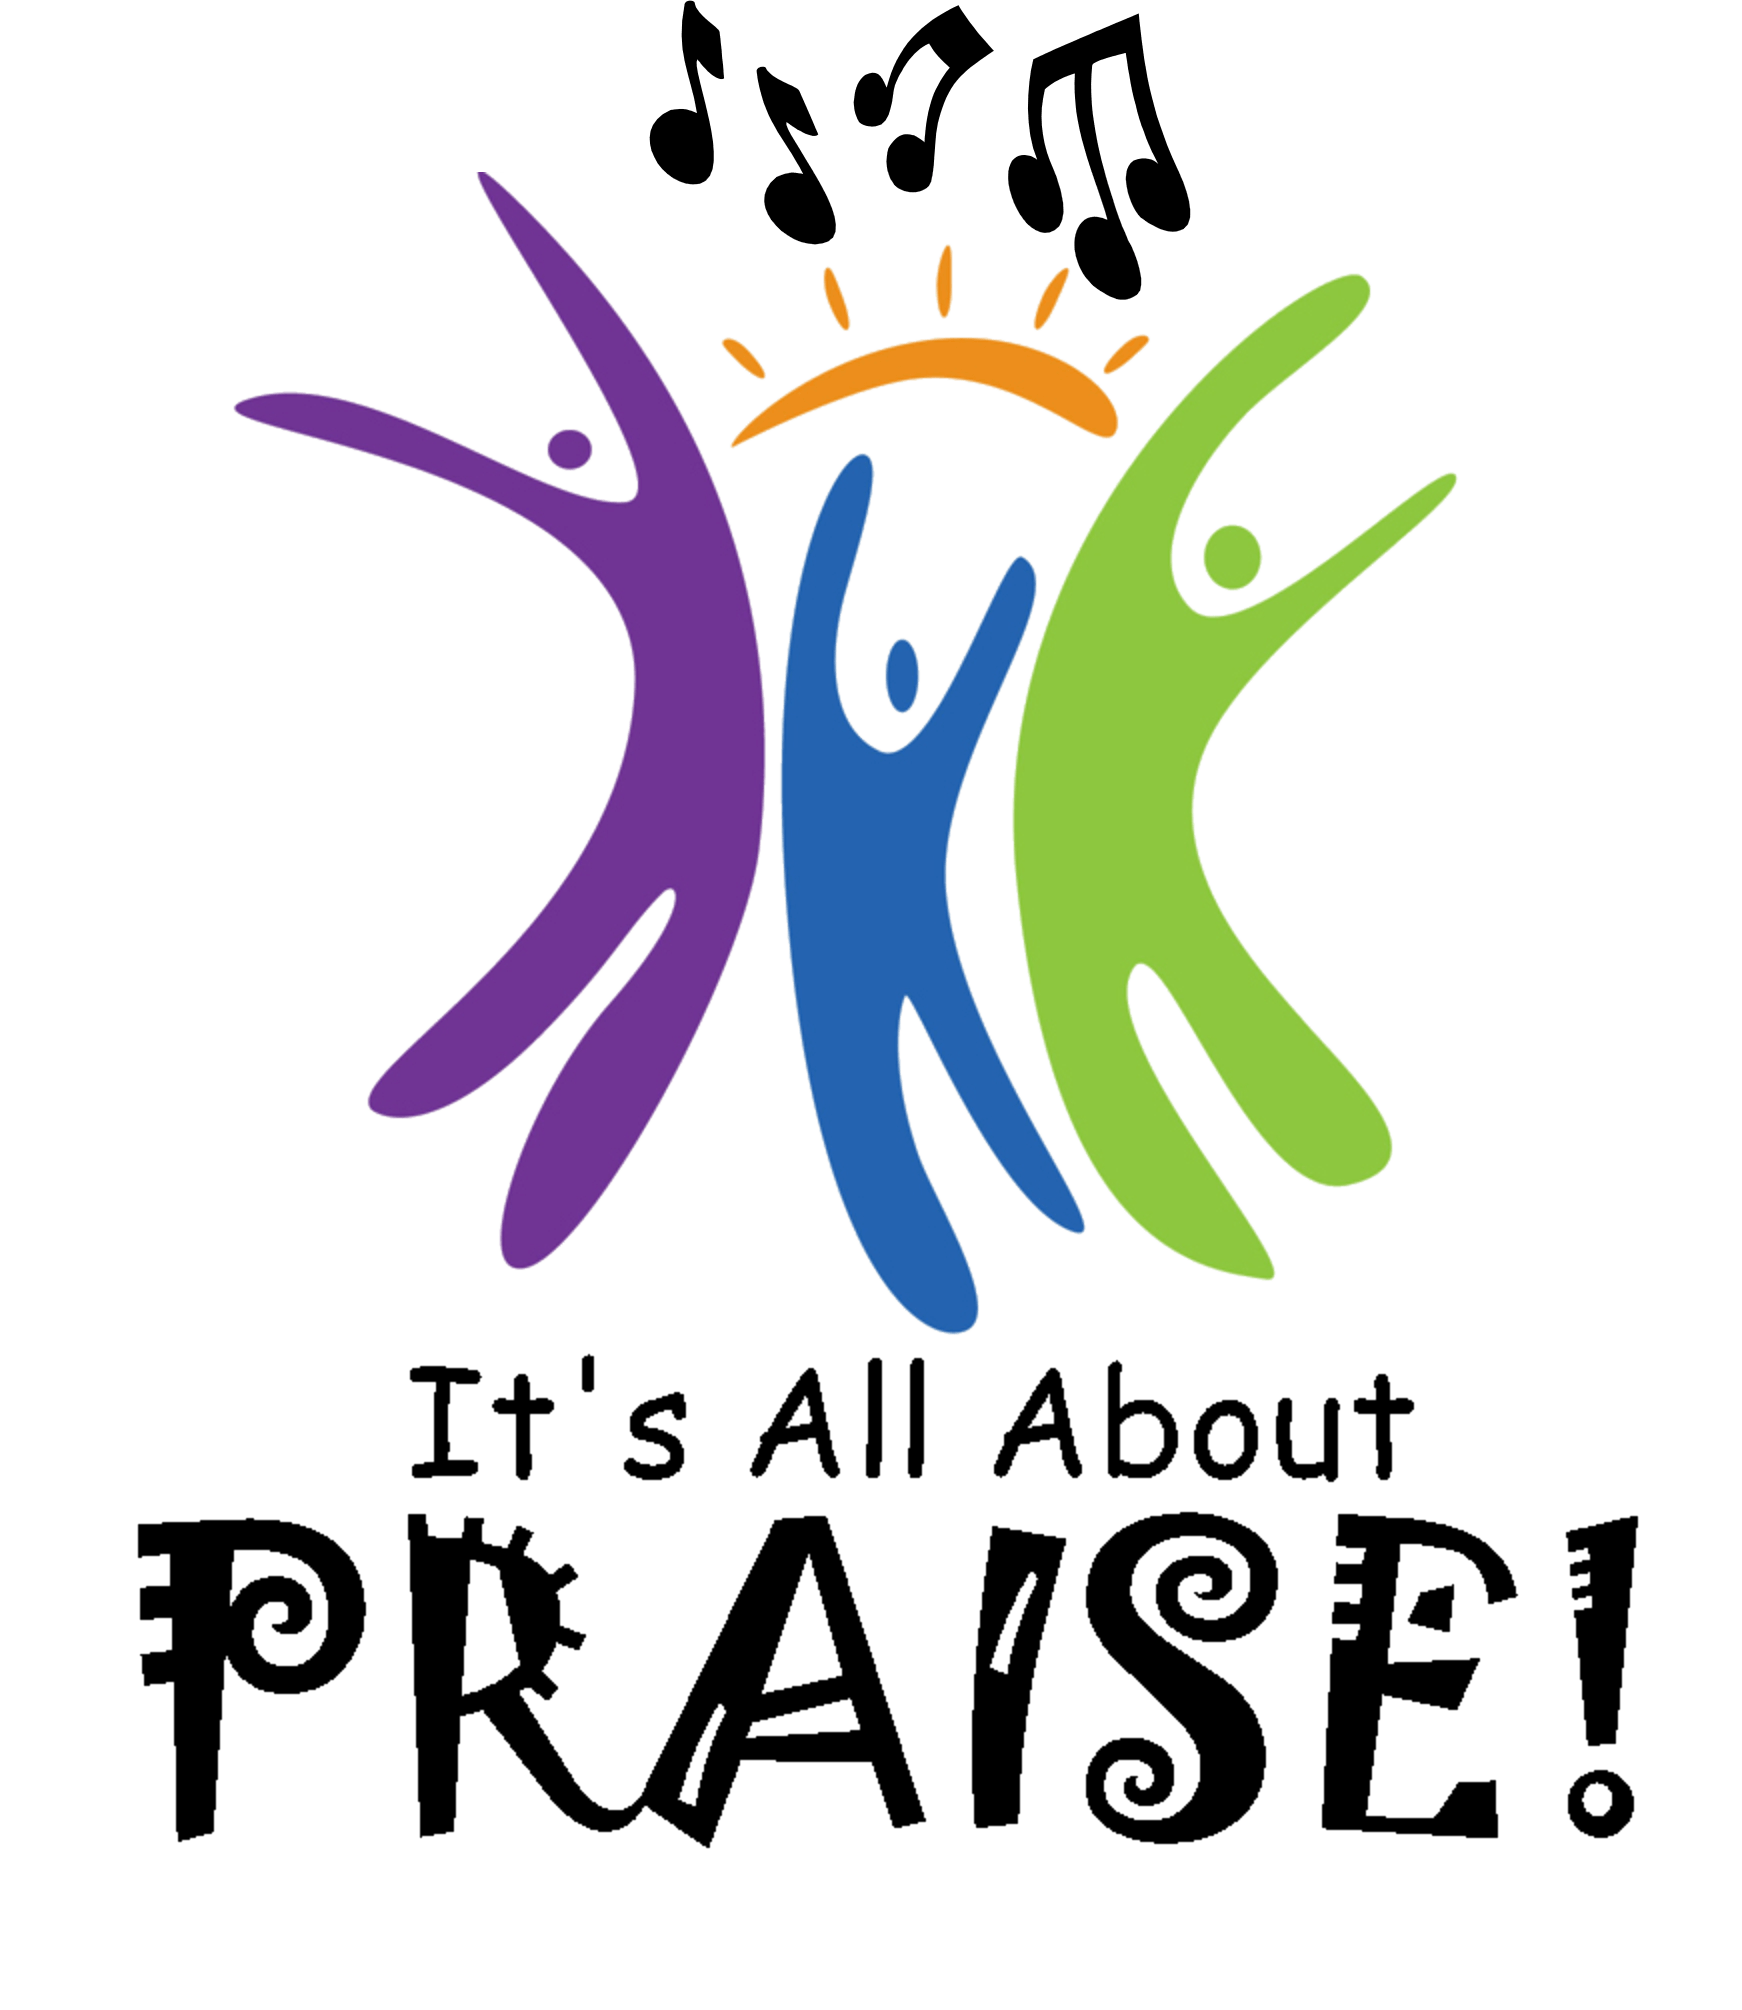 Worship Logo - Praise and worship Logos